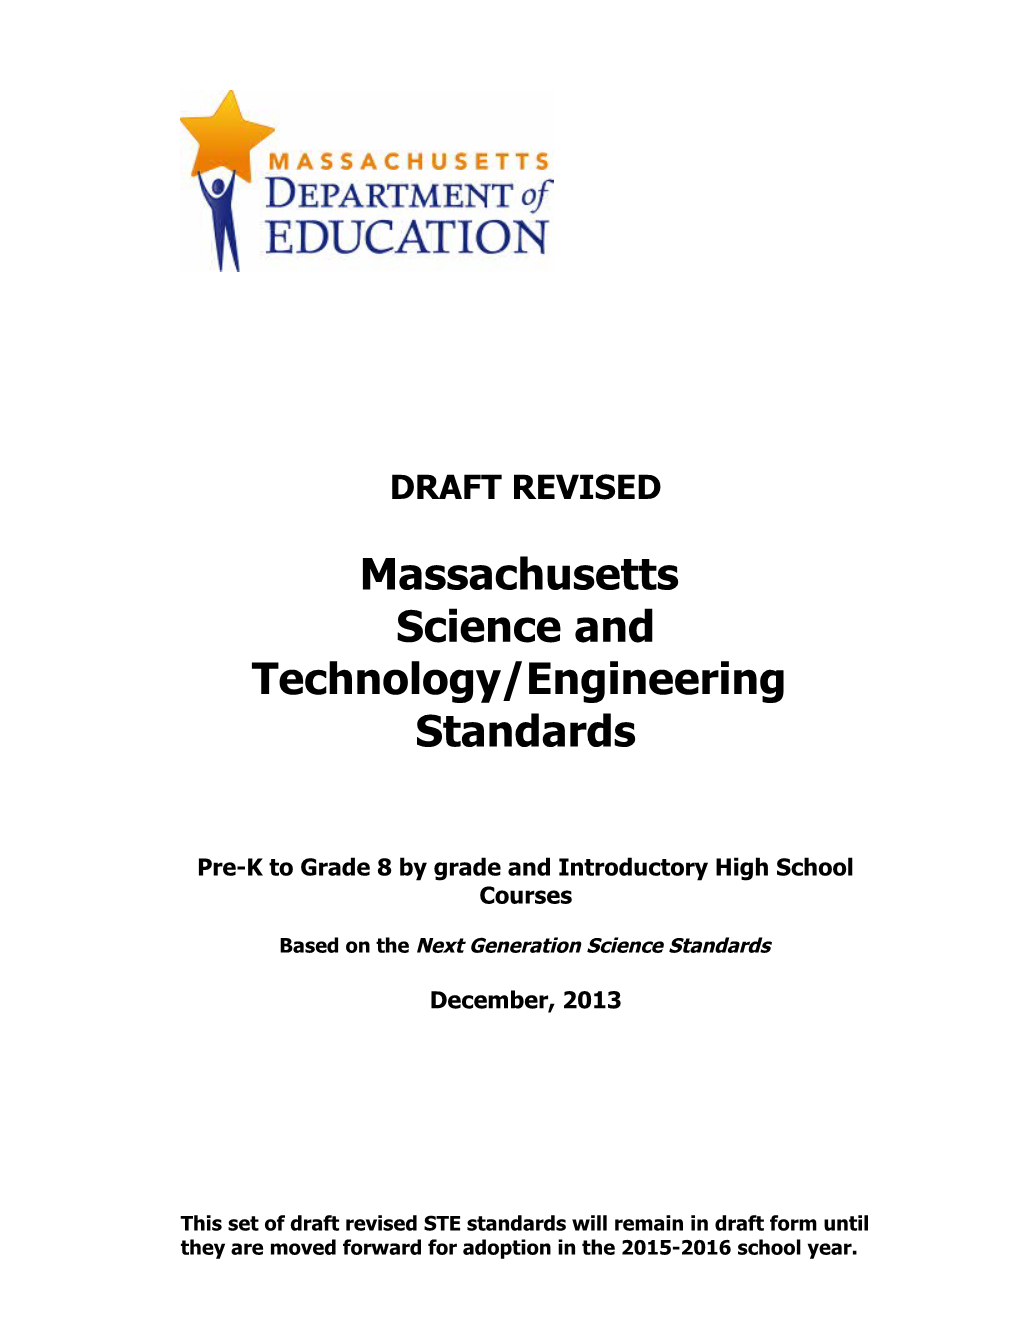 MA Draft Revised STE Standards Dec 2013